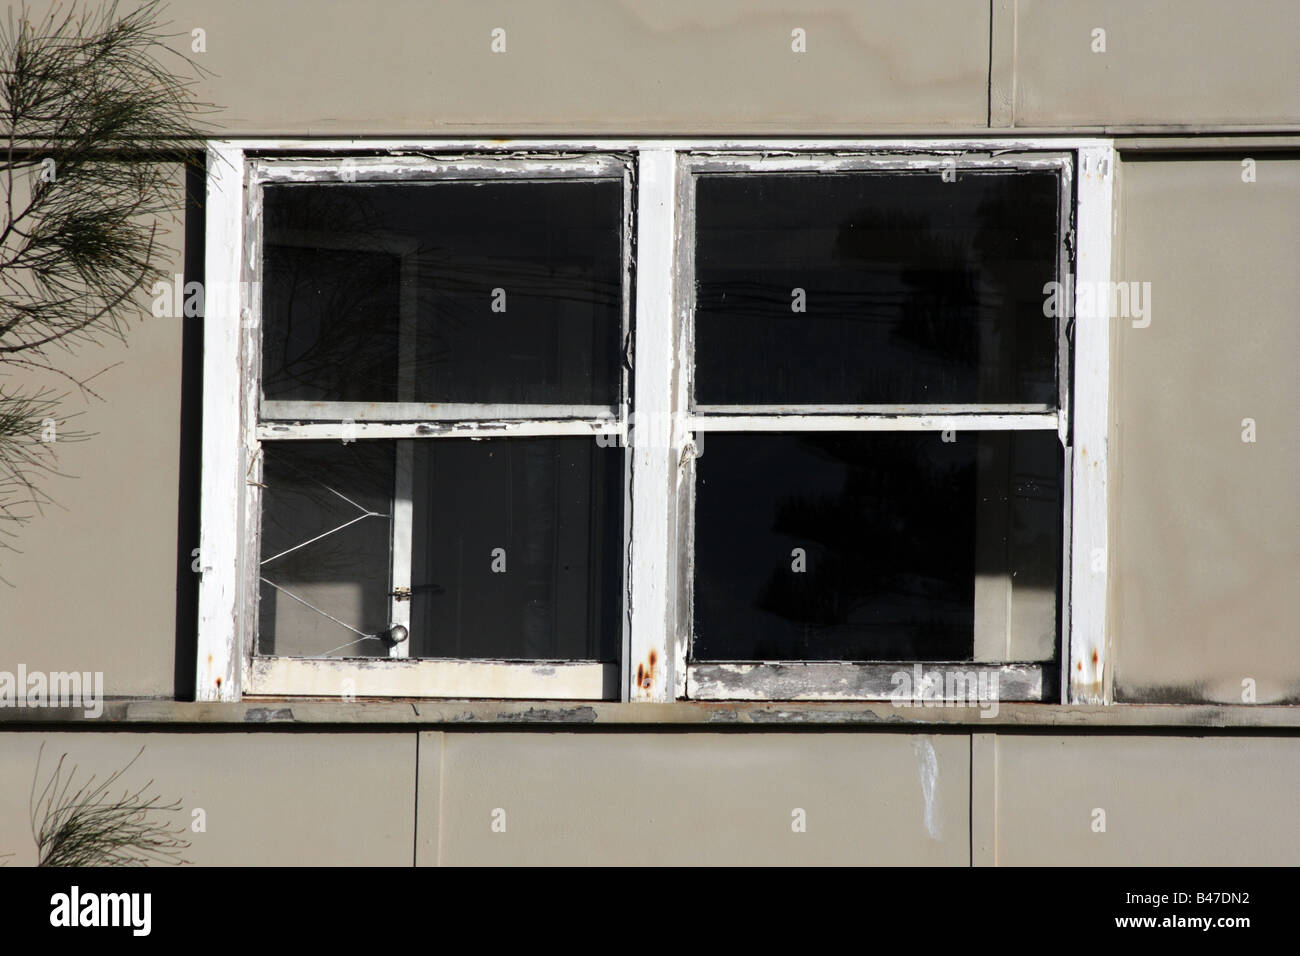 BROKEN WINDOW IN DERELICT HOUSE HORIZONTAL BAPDB11219 Stock Photo